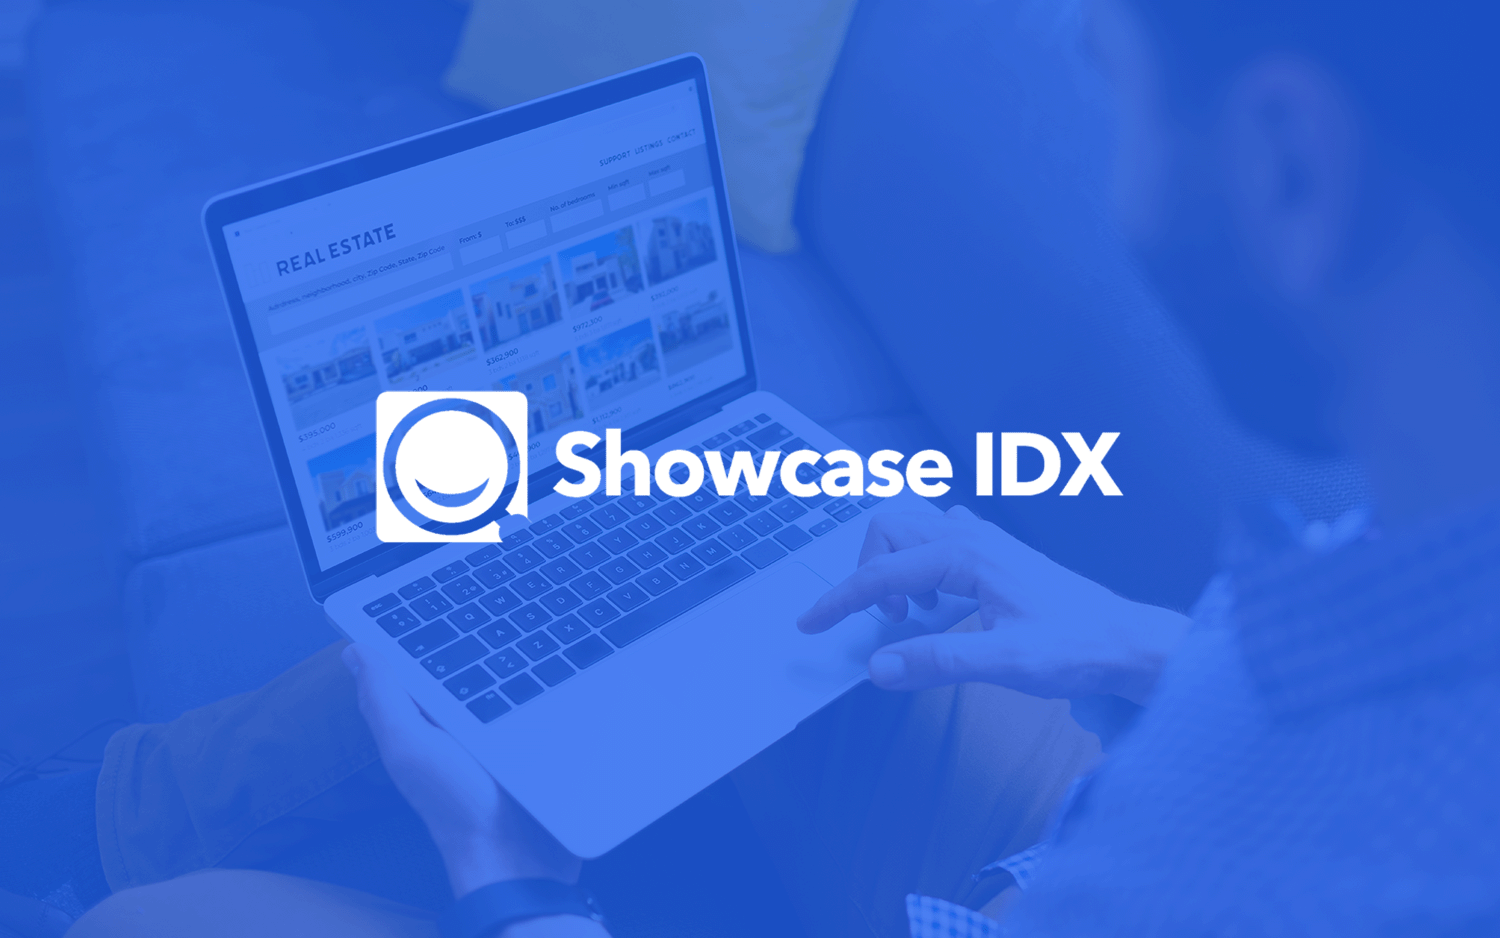 showcase idx featured image